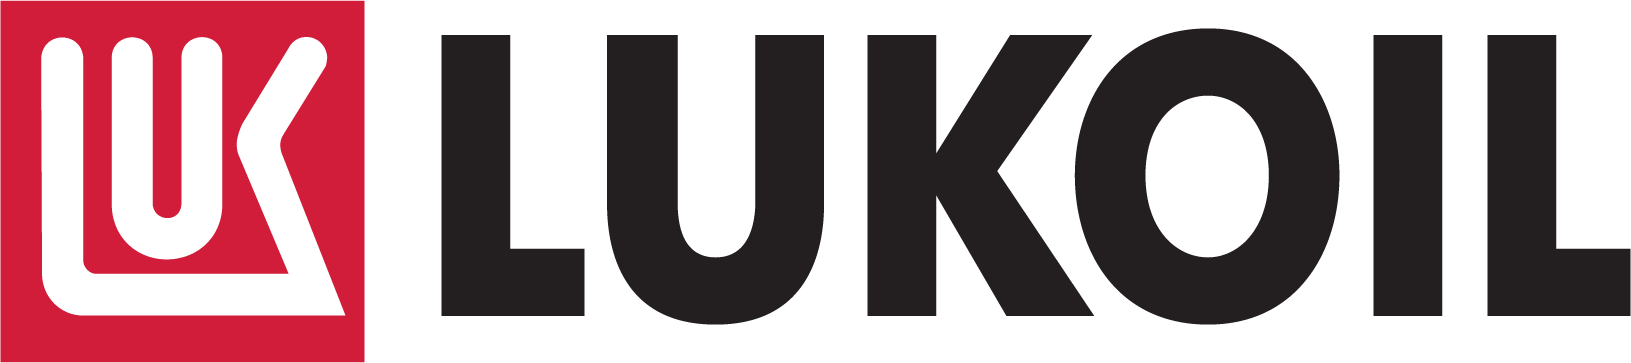 LUK Logo PNG